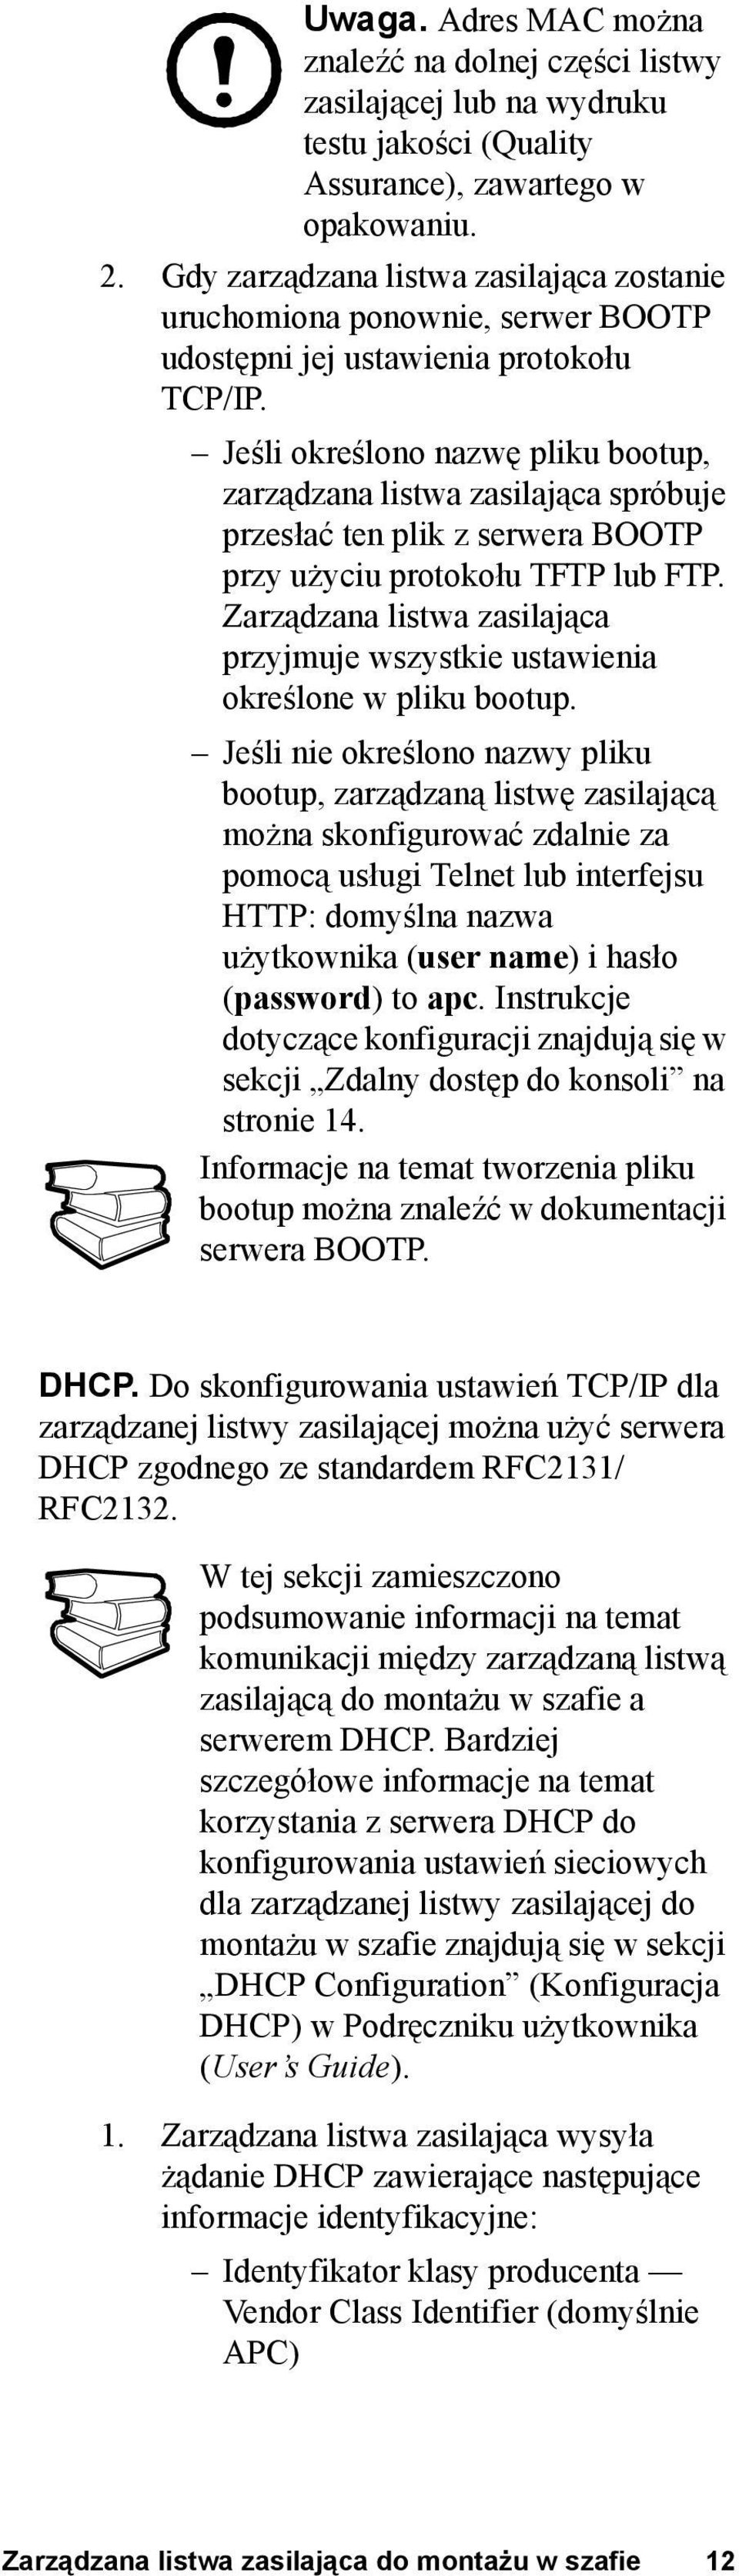 Jeśli określono nazwę pliku bootup, zarządzana listwa zasilająca spróbuje przesłać ten plik z serwera BOOTP przy użyciu protokołu TFTP lub FTP.